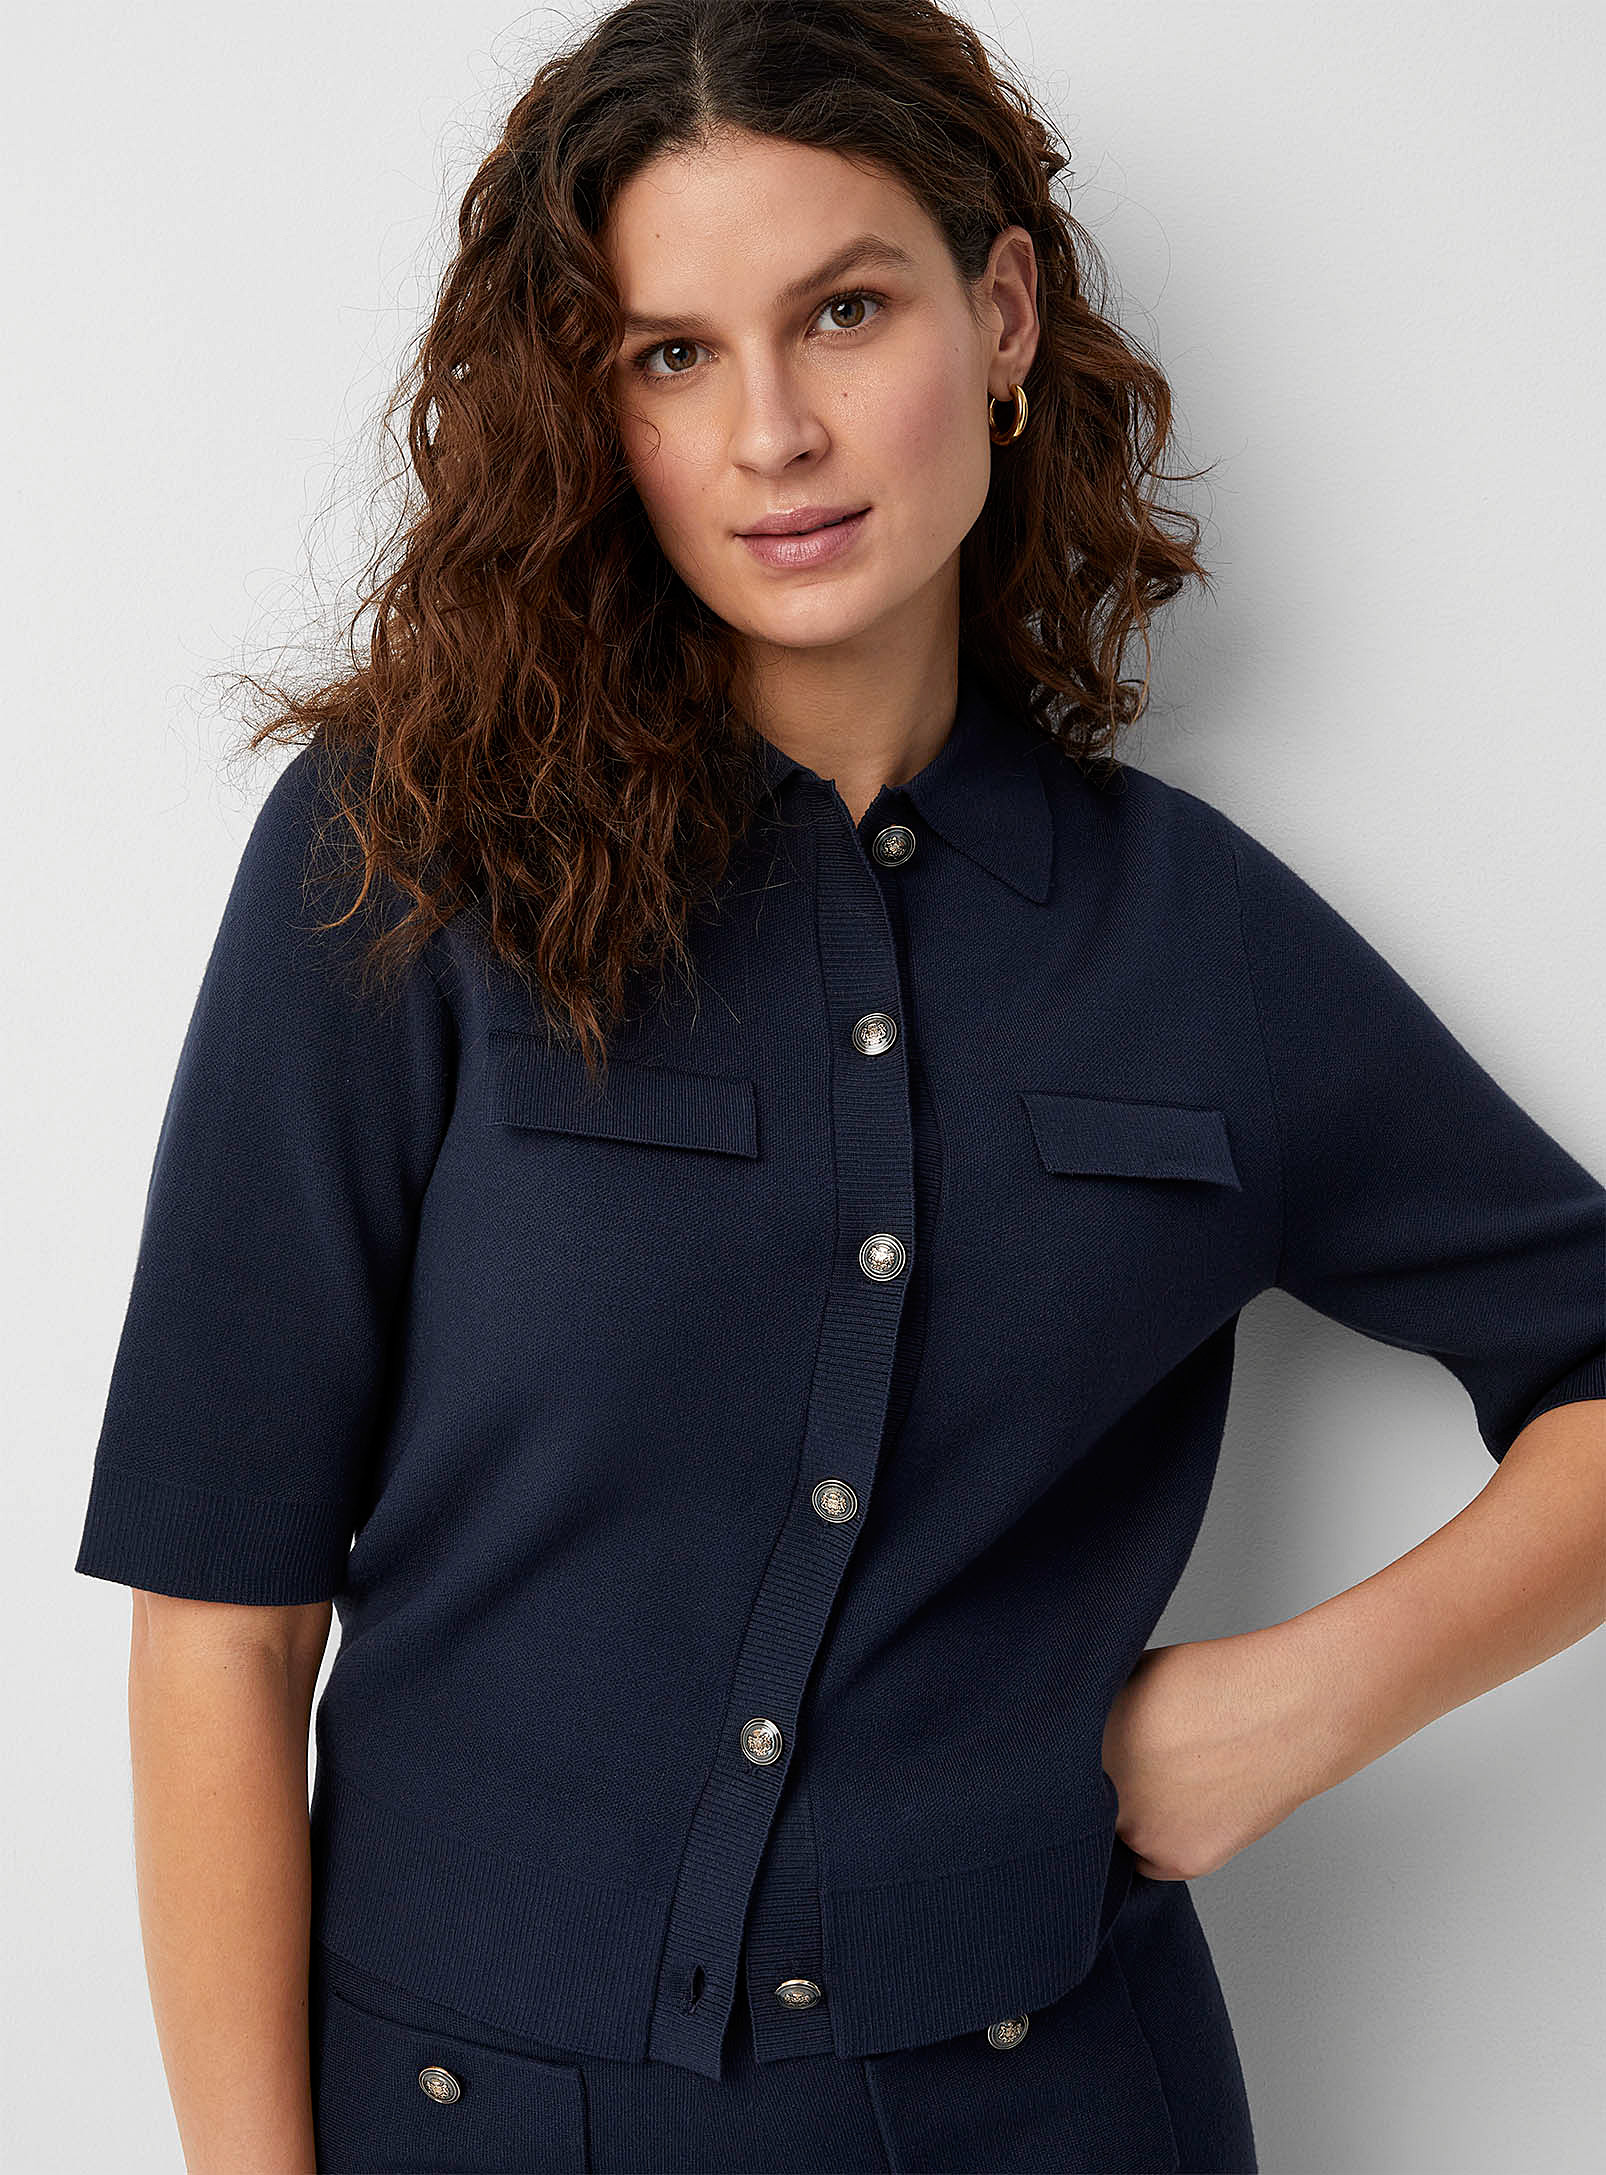 Contemporaine - Women's Crest buttons Polo Shirt cardigan